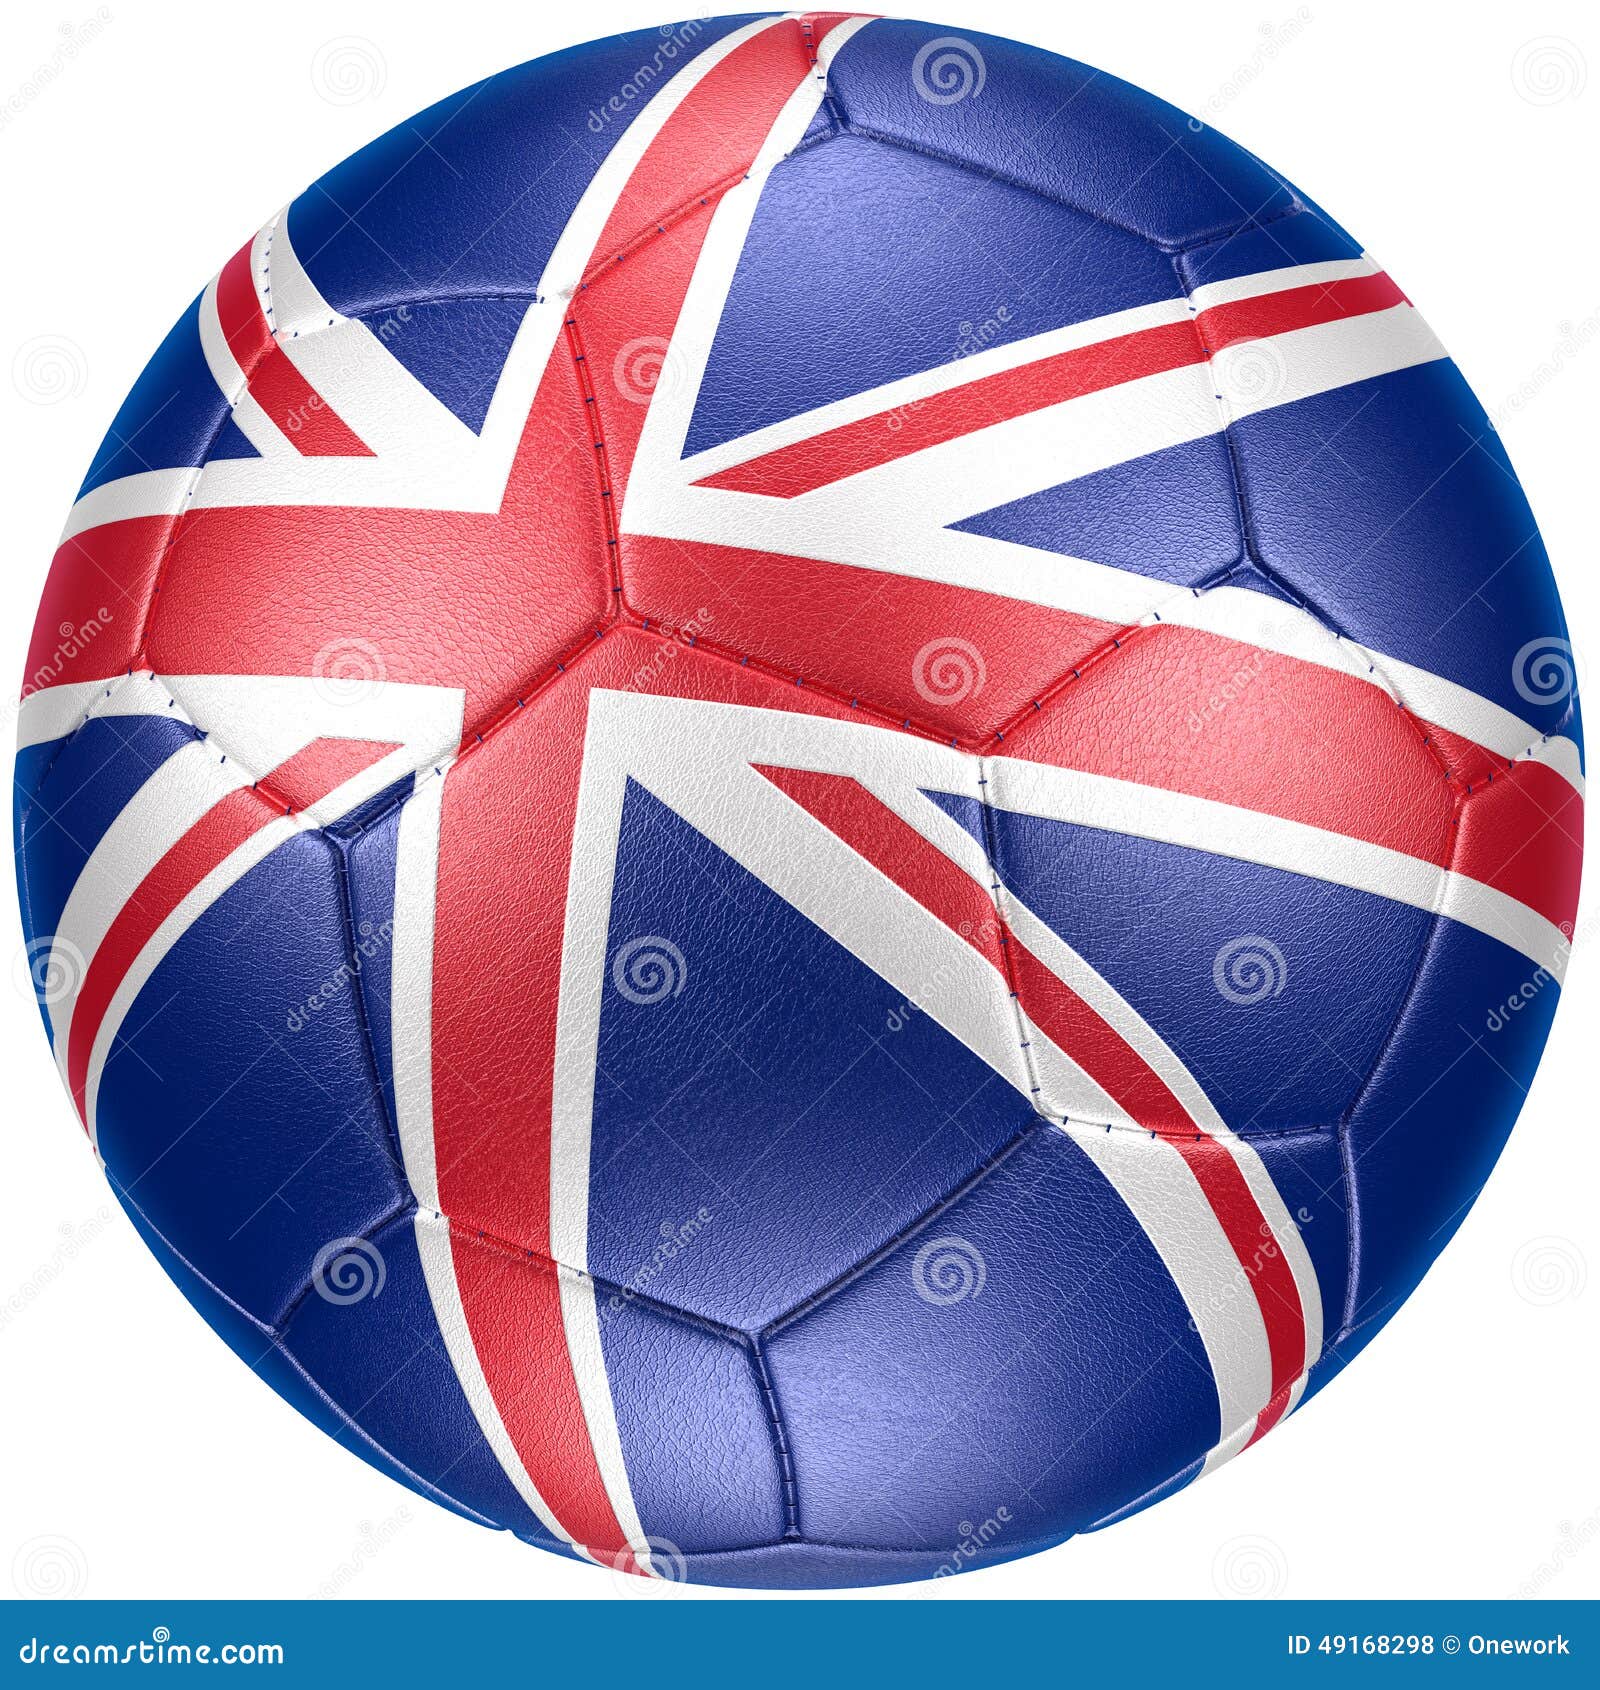 Мяч перевести на английский. Мячик с британским флагом. Мяч на английском. Флаг Англии и футбольный мяч. Футбольный мяч с флагом Великобритании.